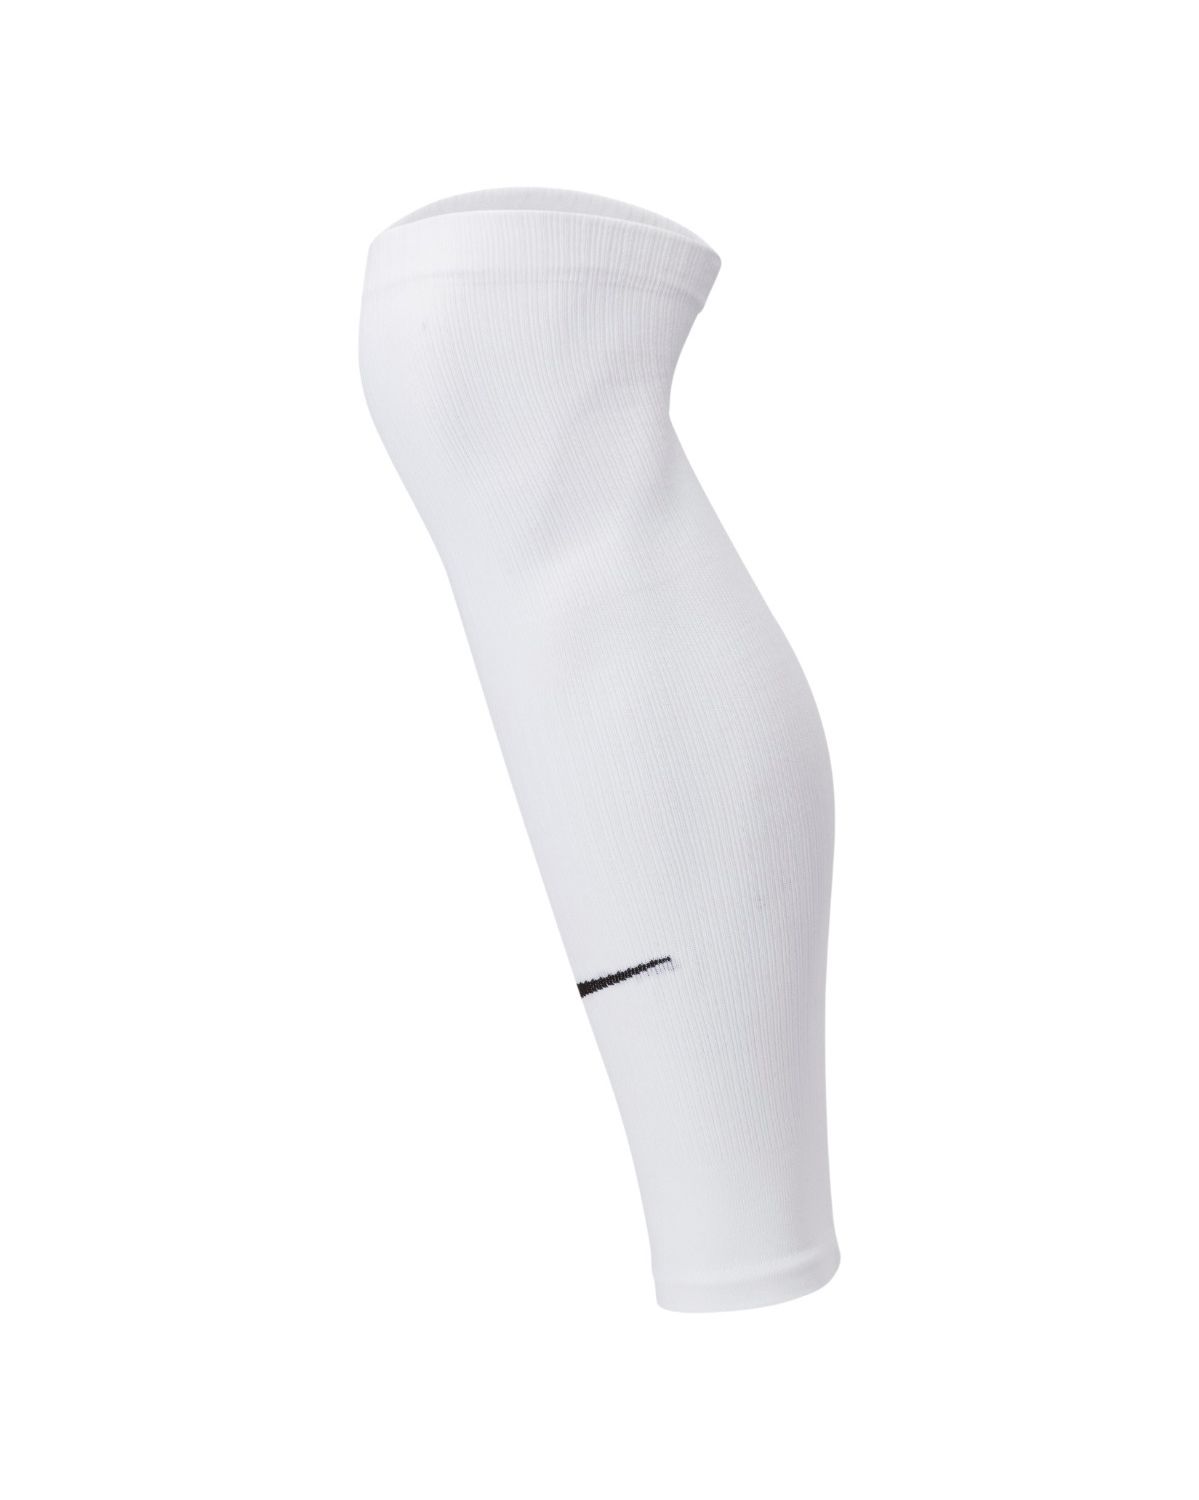 Mangas de perna Nike